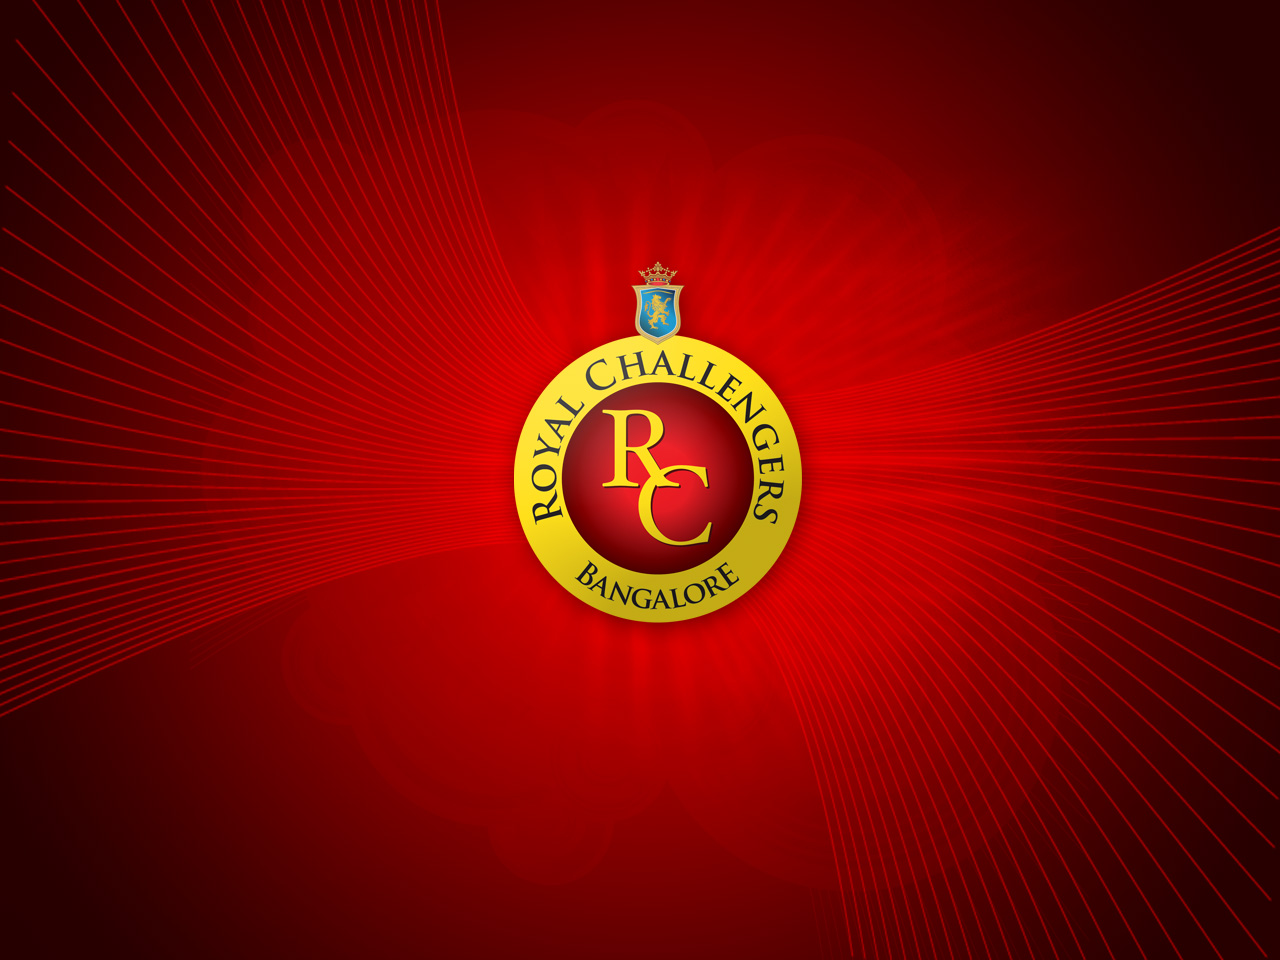 logo rcb fonds d'écran hd,rouge,emblème,police de caractère,symbole,cercle